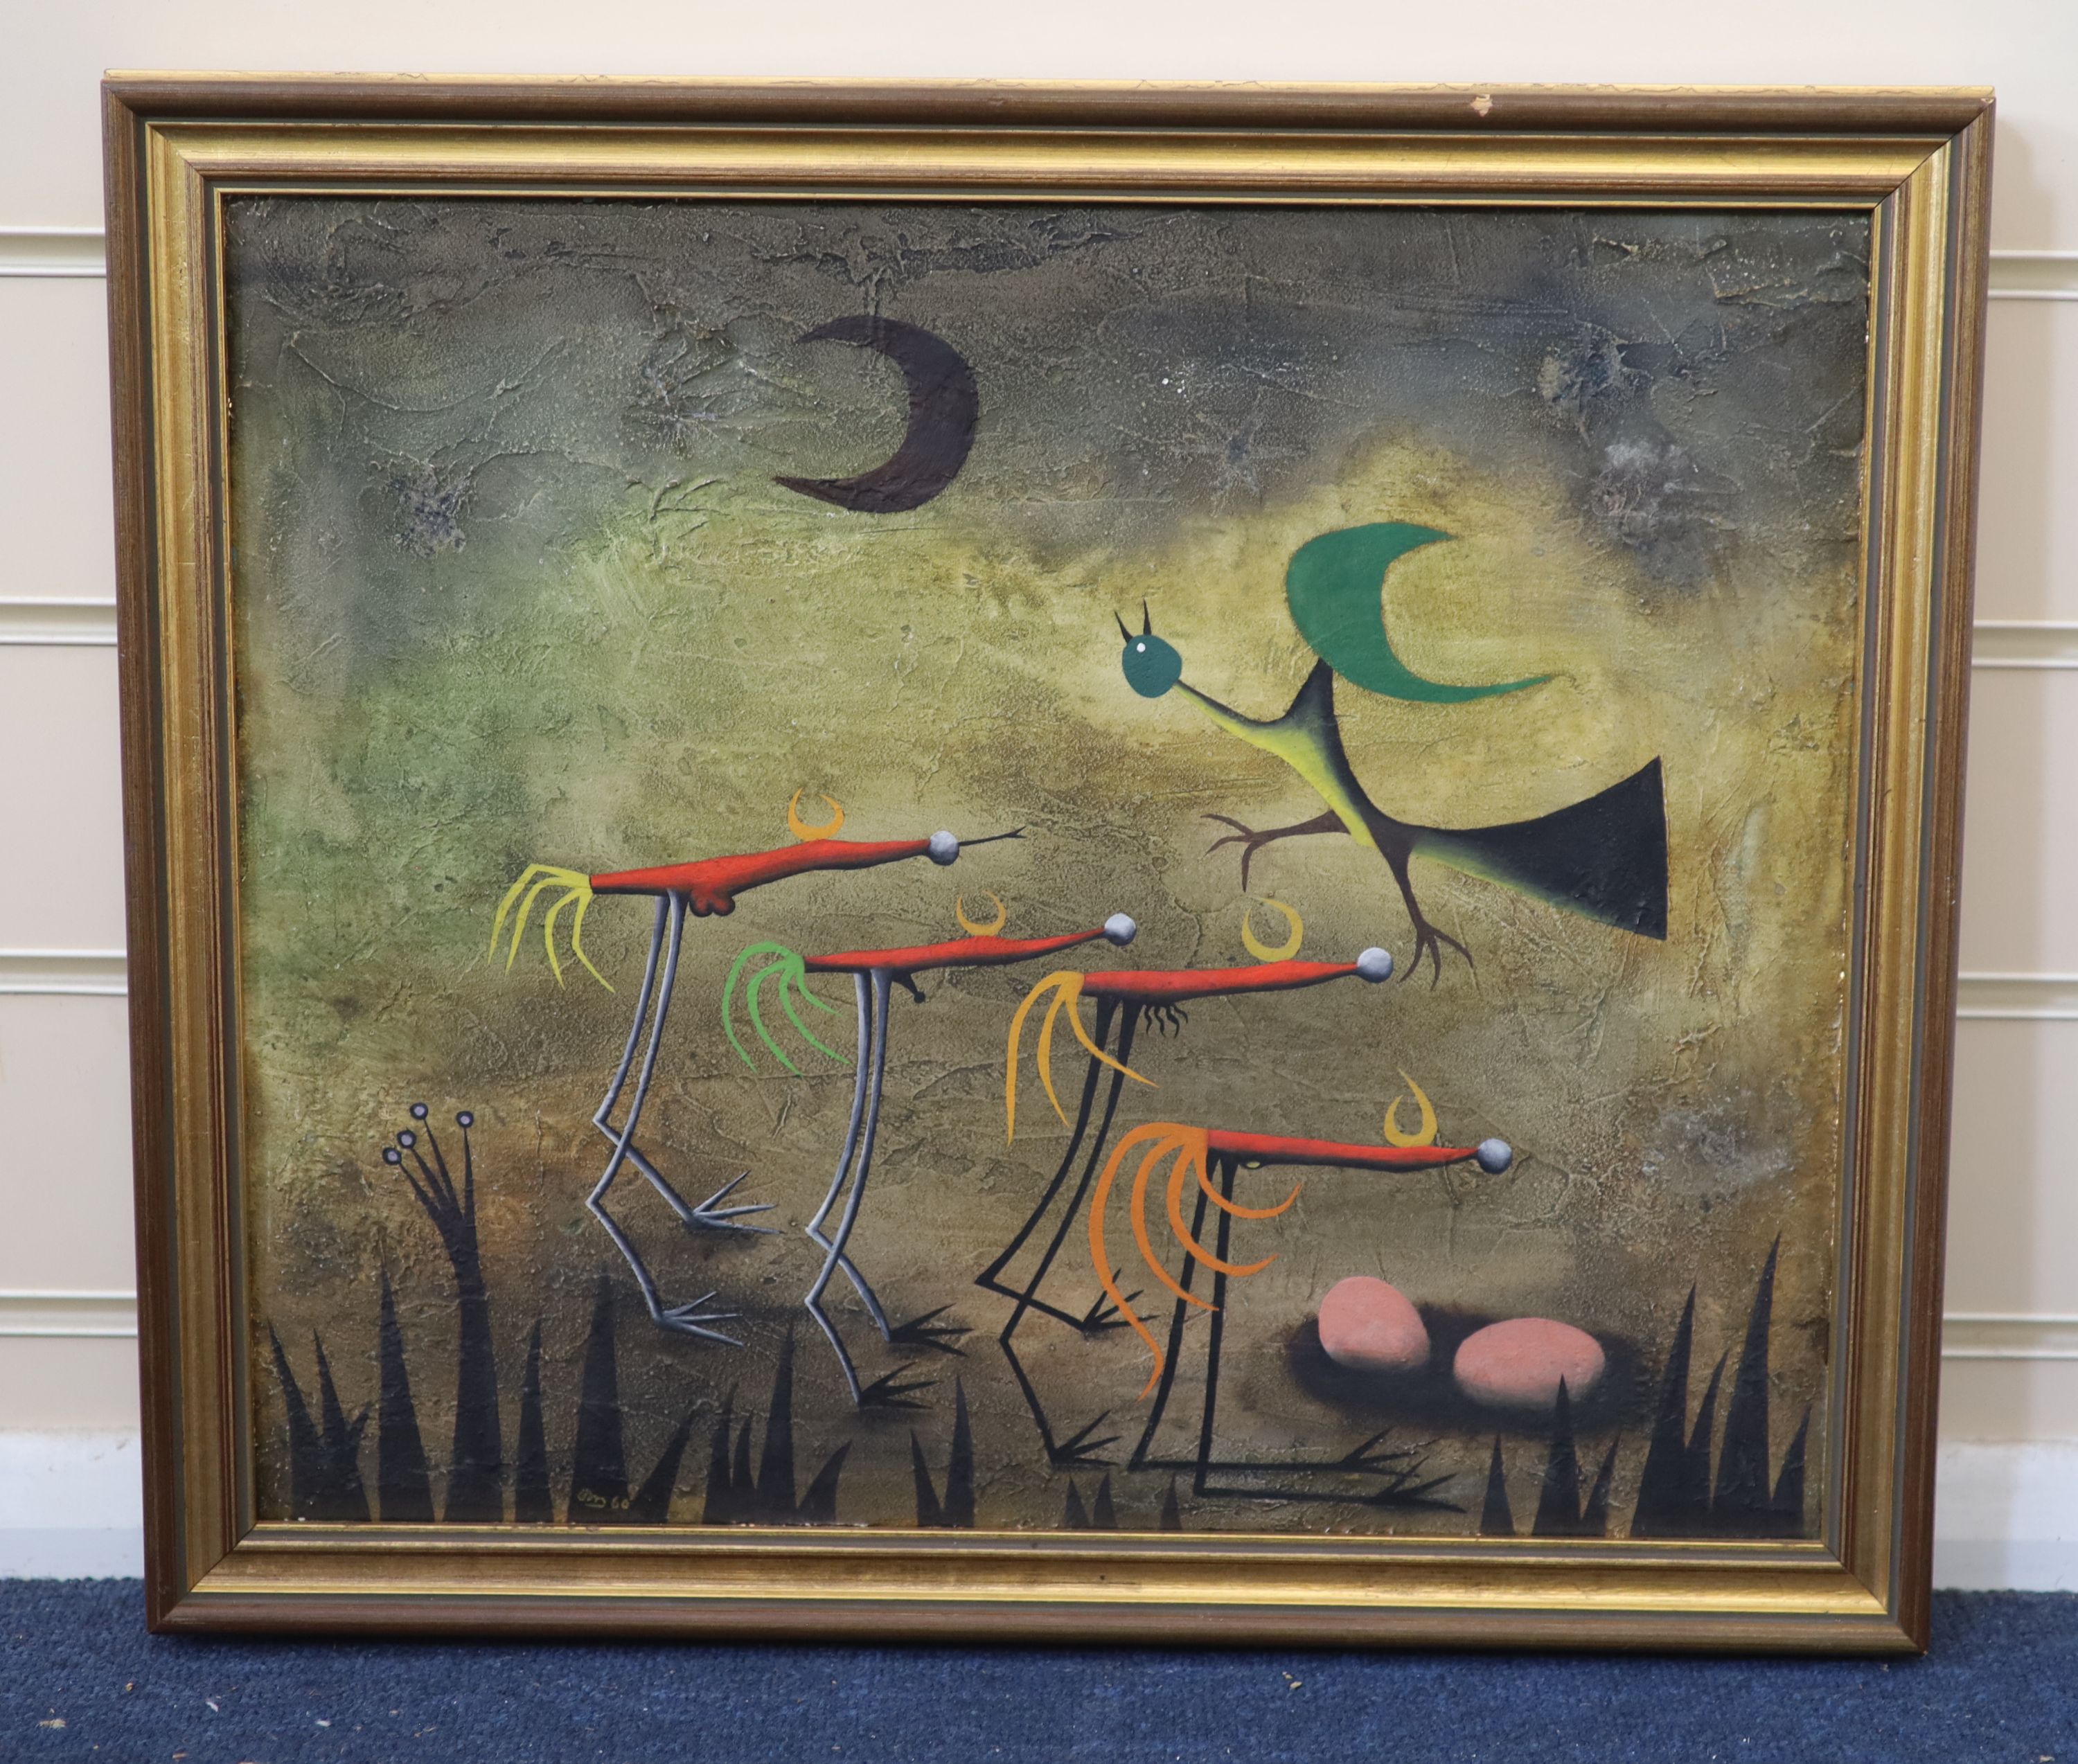 Desmond Morris (1928-), Surreal Birds, Oil on canvas, 36 x 43cm.